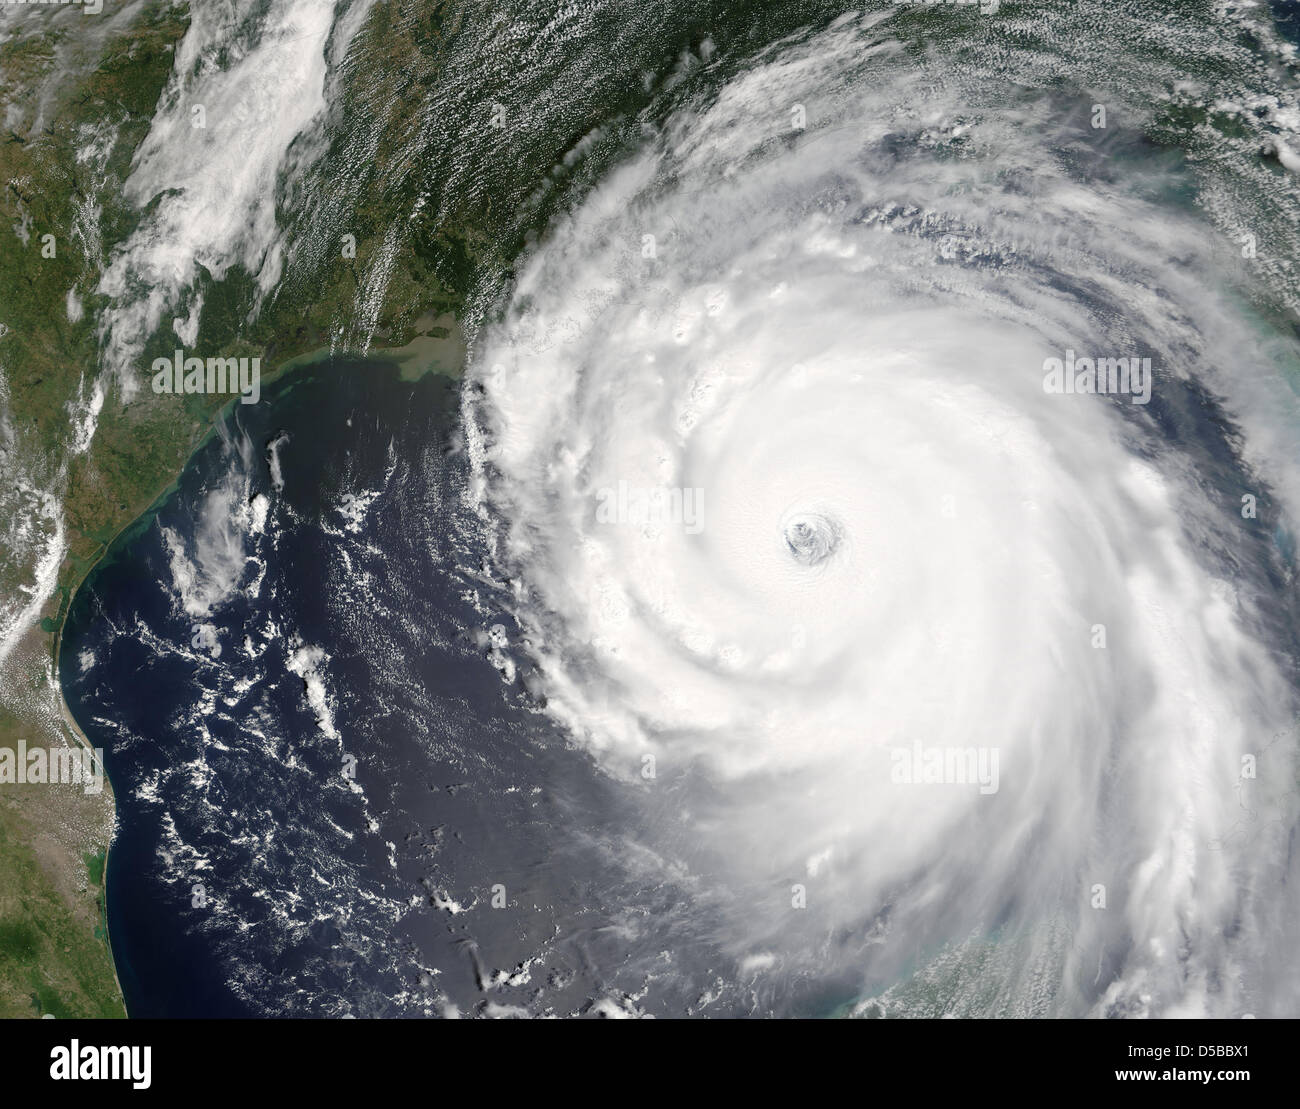 Una dispensa per la NASA ha rilasciato il 29 maggio 2005 di un'immagine satellitare sull uragano Katrina il roaming oltre il golfo del Messico. "Katrina" è stato uno dei più devastanti uragani mai. Foto: Jeff Schmaltz, dello spettroradiometro MODIS team di risposta rapida, NASA/GSFC / HANDOUT / solo uso editoriale Foto Stock